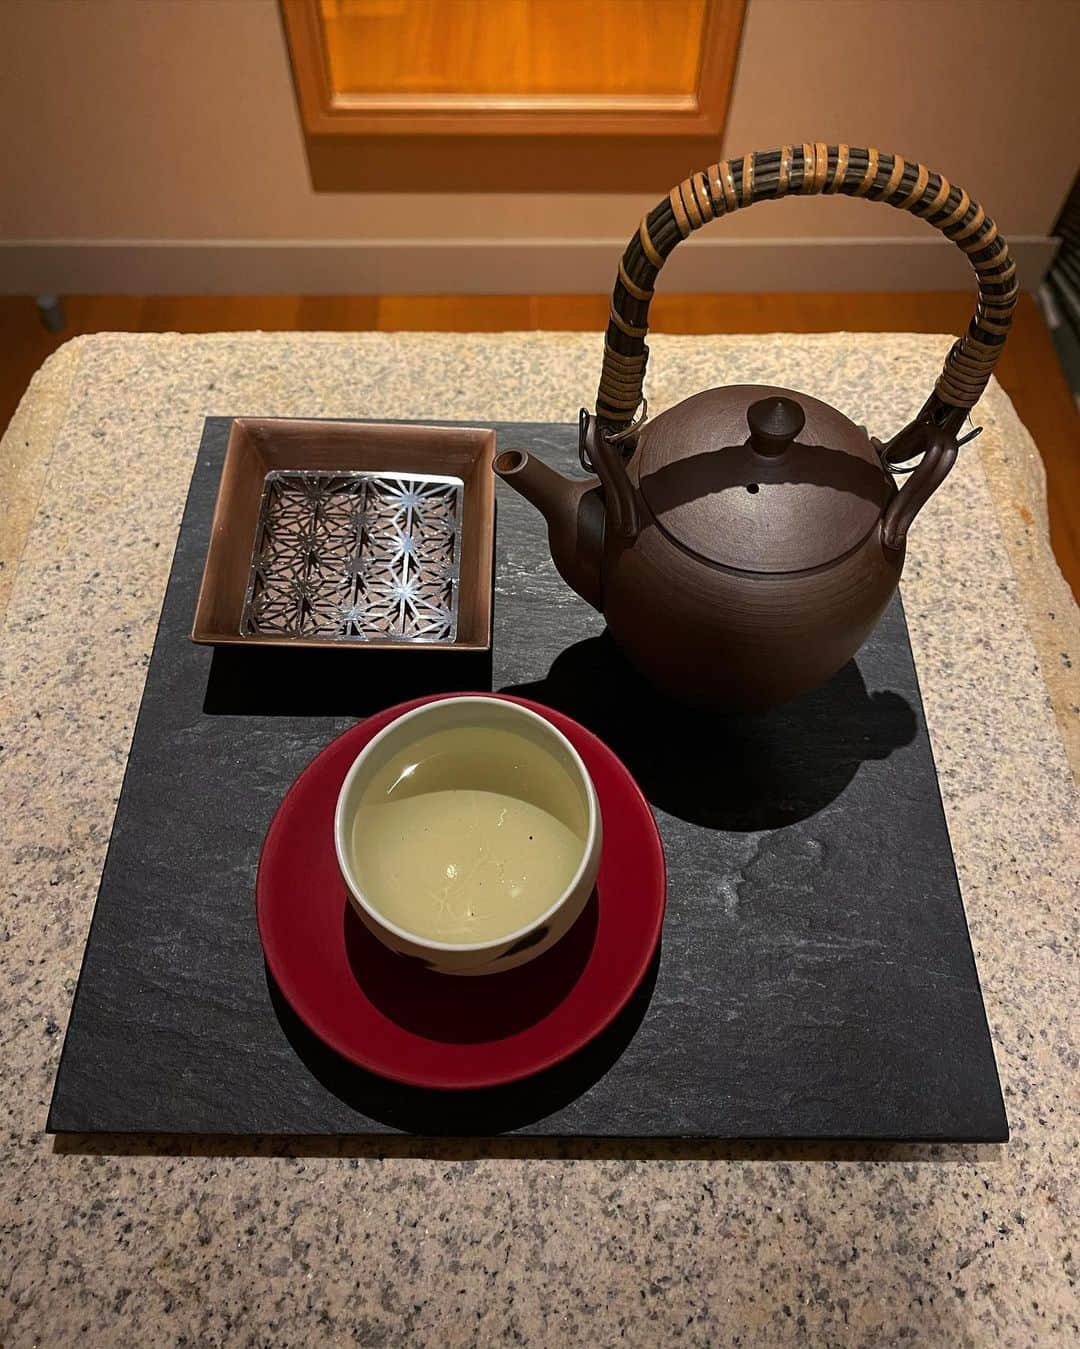 岡清華さんのインスタグラム写真 - (岡清華Instagram)「【 茶器と御茶 】  最近は、お茶を愉しむ時間が至福を感じます🍵 モダン(現代)と 和 (伝統) の組み合わせにすっかり覚醒しており、 仕事の延長線上で、プライベートの趣味的にもシビれるハイブリッドです。  ( また、素敵な茶器で淹れると茶の風味がまた格別になるのですよね〜。)  出張を頻繁にさせていただくこの頃。  いつもと違うタイムスケジュール、 そして食べ物や飲み物がコントロールしにくい中、 持参するものがコンディションを保つ大切な鍵🔑 であることを実感しています。  ＿＿＿＿＿＿＿＿＿＿＿＿＿＿＿＿＿＿＿＿＿  まずは、写真にもある、お茶。🌿 こちらは、神目箒茶です。  新潟県で丁寧に一つ一つ手作りで植え、詰みしていただいている 素敵な方に出会い、そこから数年いただき続けています。  神目箒とは、和名で、 アーユルヴェーダではトゥルーシーと呼ばれる メジャーなハーブです。  英語ではホーリーバジル。 名の通り香り高く神聖な気分にもなる味わい。  精神面へのアプローチが特に効果的とされていて、 自律神経が乱れがちな方や、神経が興奮気味な方、 精神的ストレスや疲労、睡眠障害のある方、 カフェインを摂取できない方にもオススメ。  出張先でどんなホテルに泊まっても、 おいしいお茶を持参して、淹れるだけで、 本当に過ごす時間のクォリティが変わる。  こだわりを持ち歩く。 いつでも自分らしくいられる方法です。  それ以外にも、 舌👅磨きをするタンスクレイパー、 耳👂や鼻👃をセルフケアするセサミオイルや、 移動中に乾燥したり疲れた心身を潤すギーは、 欠かせない出張グッズです。  ＿＿＿＿＿＿＿＿＿＿＿＿＿＿＿＿＿＿＿＿＿  👆こちらは全て、MOTHER @mother___jp のウェブサイトの SHOPから購入することができますよ。  ちなみに、 MOTHERの公式アカウントでは告知させて いただきましたが、2021年1月からは、 MOTHERのプロダクト、会員プランの新規申し込み分は、 全て消費税をプラスさせていただくことになりました。  申し込みや購入をするなら今ですよ！  私が運営するMOTHERは、 メルマガ受信やウェブ集会に参加できるコミュニティ、 講座資料などをシェアさせていただくシェアメンバー、 MOTHERの活動を共に支援いただくチームメンバー、  そして、オンライン上で毎日のレギュラーの 瞑想のクラス、ヨガのクラスの会員様を募集していますよ。  また、絶賛進行中のアーユルヴェーダスクールも 第三期を2021年に開催することになりました。 @mother_leader2020 (12/1 改めて発表します)  アーユルヴェーダの基礎が学びたい方は、 まずは4つのアーユルヴェーダ講座を受講ください。 また、SHOPページから過去全ての講座が購入いただけます。  MOTHERは、それぞれのタイミングで、 それぞれの関わり方を大切に、 一度でも関わっていただけた全ての皆様とのご縁を 大切に紡いでいます。  ＿＿＿＿＿＿＿＿＿＿＿＿＿＿＿＿＿＿＿＿＿  12/20 にコートヤード広尾 @courtyard_hiroo にて 開催するイベントは、MOTHERに関わる皆様への 感謝祭のようなイベントです。  私の大好きな場所、とっても素敵な空間で、 スペシャルな企画を盛りだくさん計画しています。  12:00〜14:00のヨガ🧘‍♂️も行う会と、 15:00〜17:00 のギー作りの会は空きがありますよ。  是非2020年最後のリアルでお会いできる場。 わたしの思い入れのある場所で皆様と過ごせること 本当に楽しみにしています。  🌏全ての詳細は、ウェブサイトにてチェックくださいませ🙏 ＿＿＿＿＿＿＿＿＿＿＿＿＿＿＿＿＿＿＿＿＿  #日本 #伝統 #最新 #健康 #メンタルヘルス #コンディションニング  #出張 #こだわりを持ち歩く #至福　#お茶 #ハーブ #神目箒 #トゥルーシー #ストレス #疲労 #睡眠障害 #自律神経 #ノンカフェイン #整精神 #アーユルヴェーダ #生きる知恵 #生活の知恵 #丁寧な暮らし #豊かな暮らし #茶器 #お茶 #モダン #和　#ハイブリッド」11月29日 22時07分 - okasaya